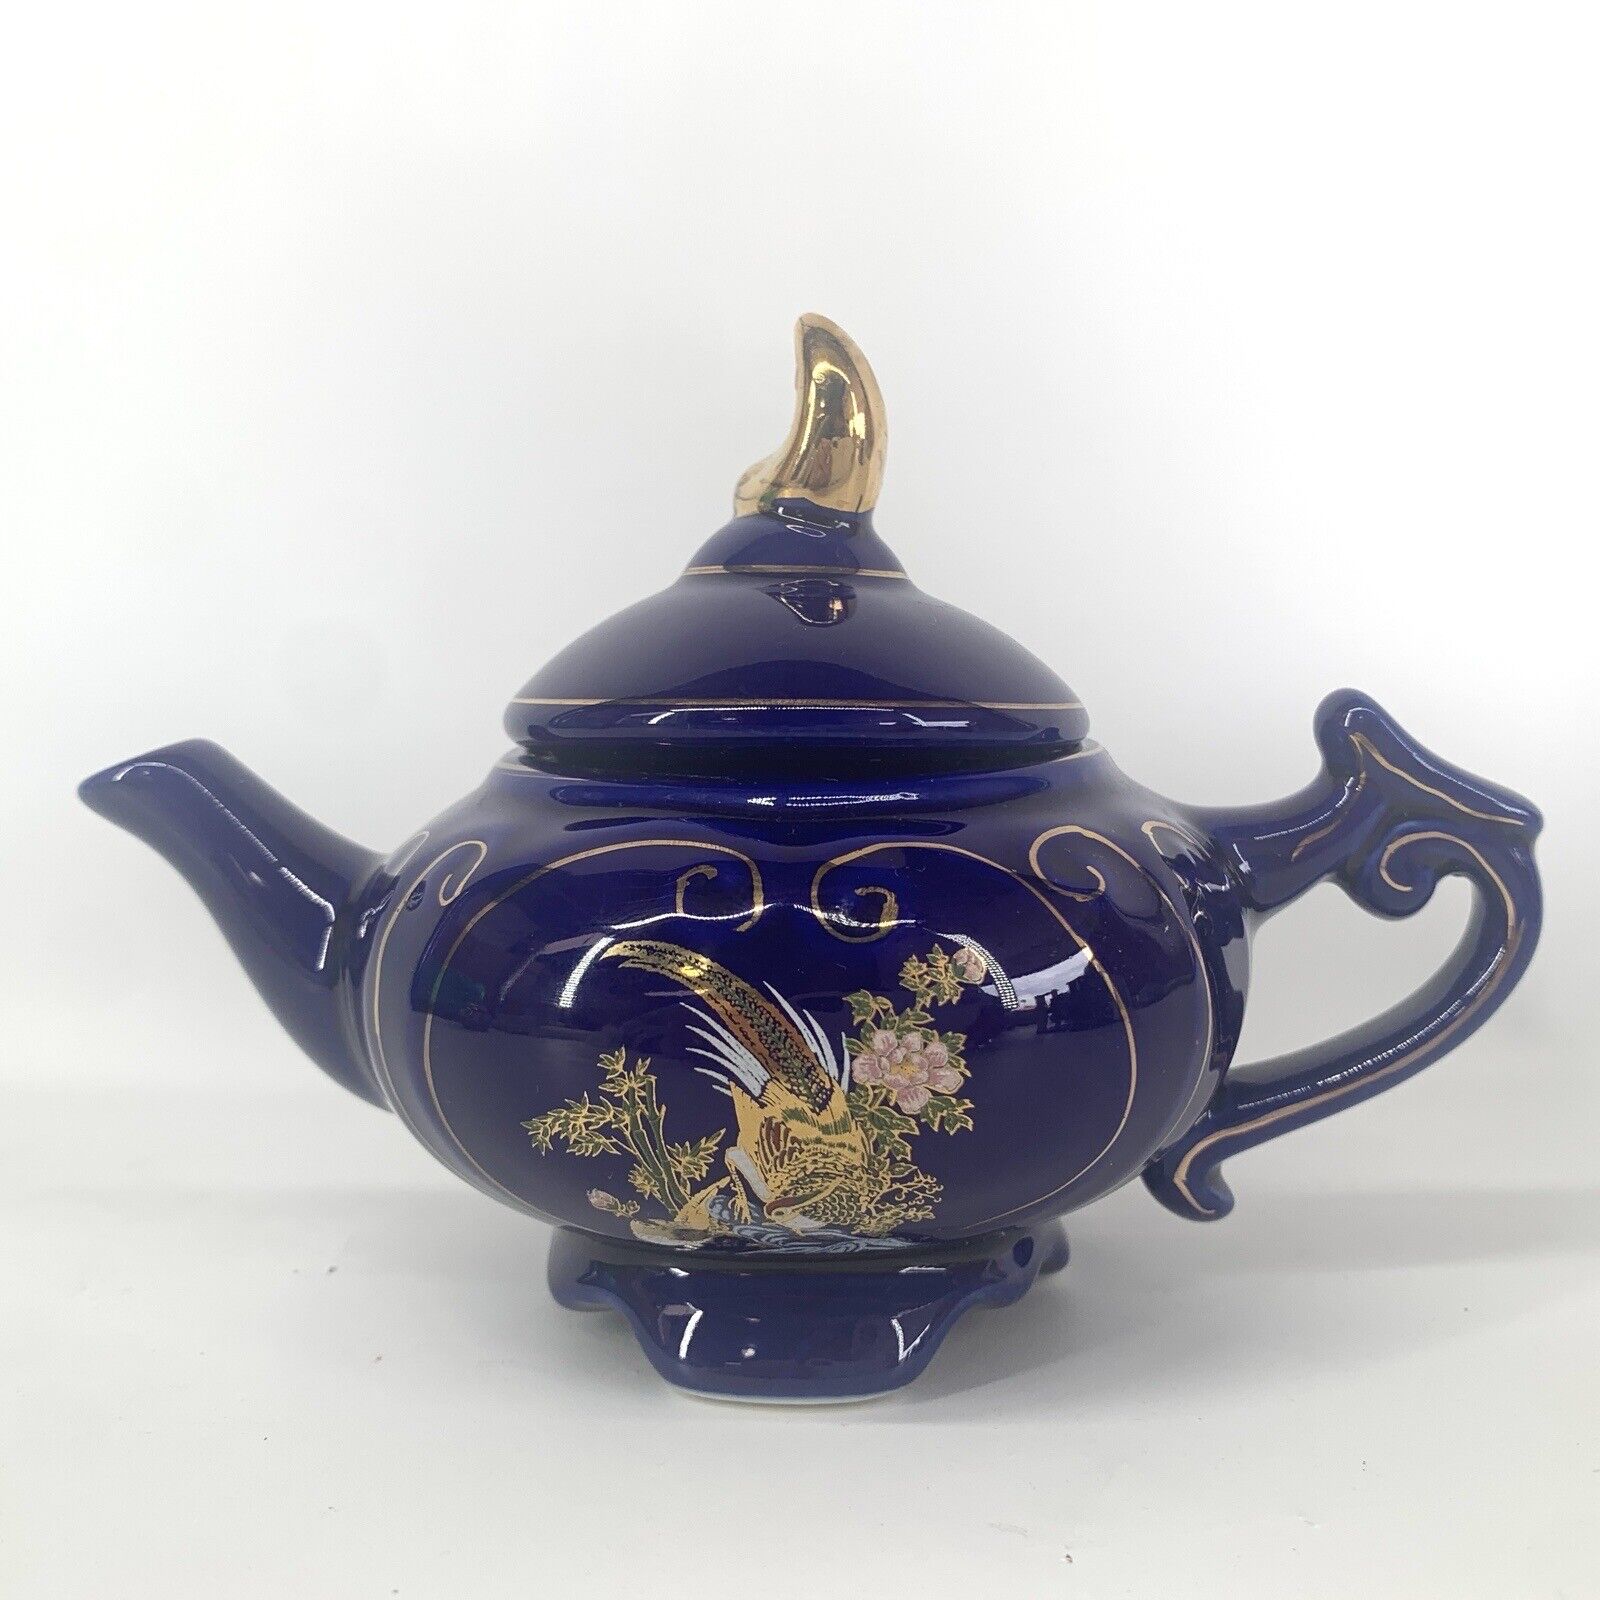 Vintage Teapot Asian Golden Pheasant Cobalt Blue Ceramic With Lid